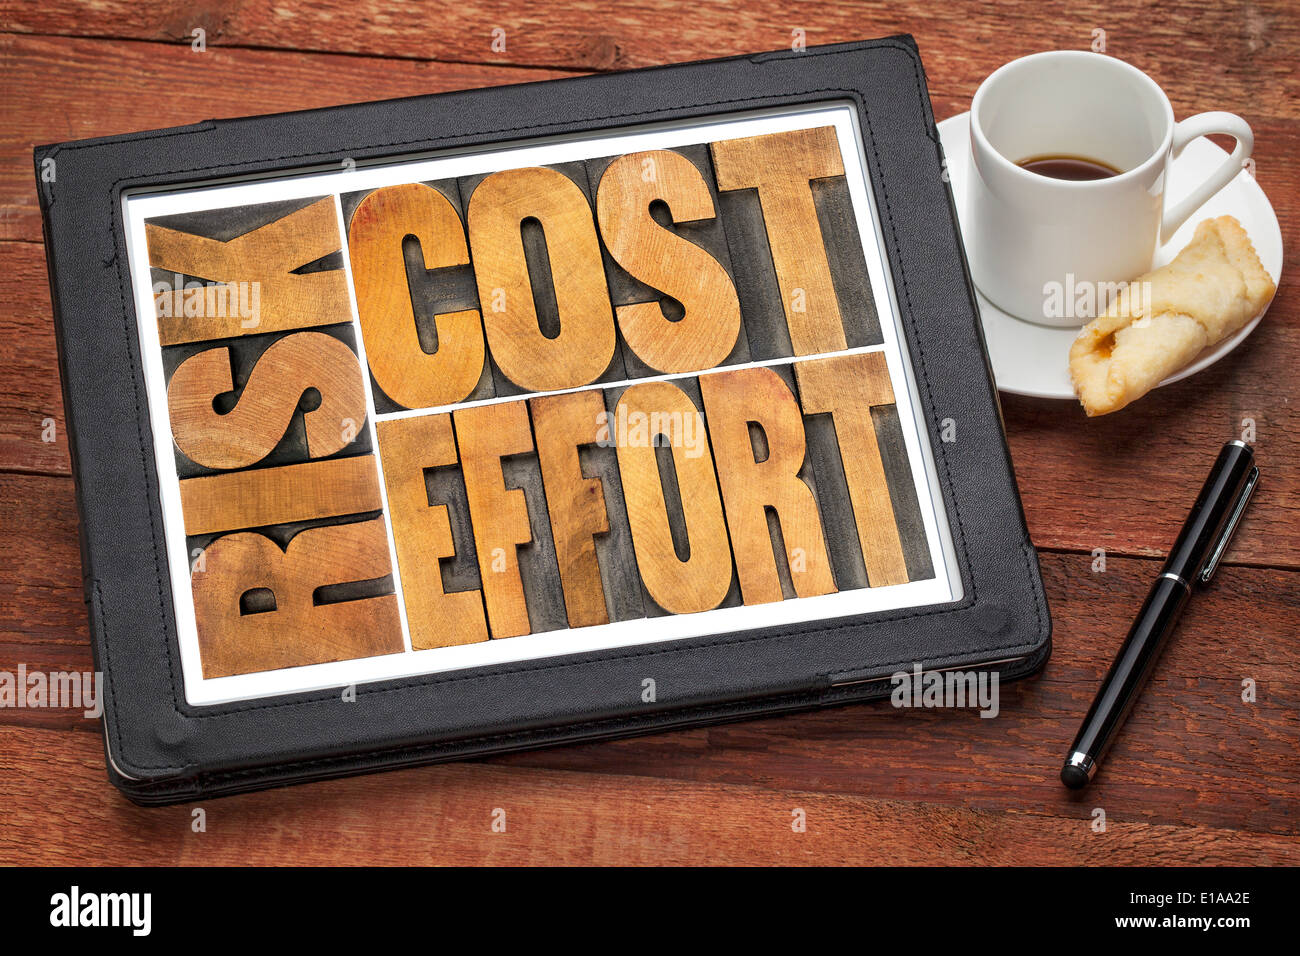 Costes, esfuerzo, riesgo - Concepto de negocio - una palabra abstracta en madera vintage tipografía bloques en una tableta digital Foto de stock